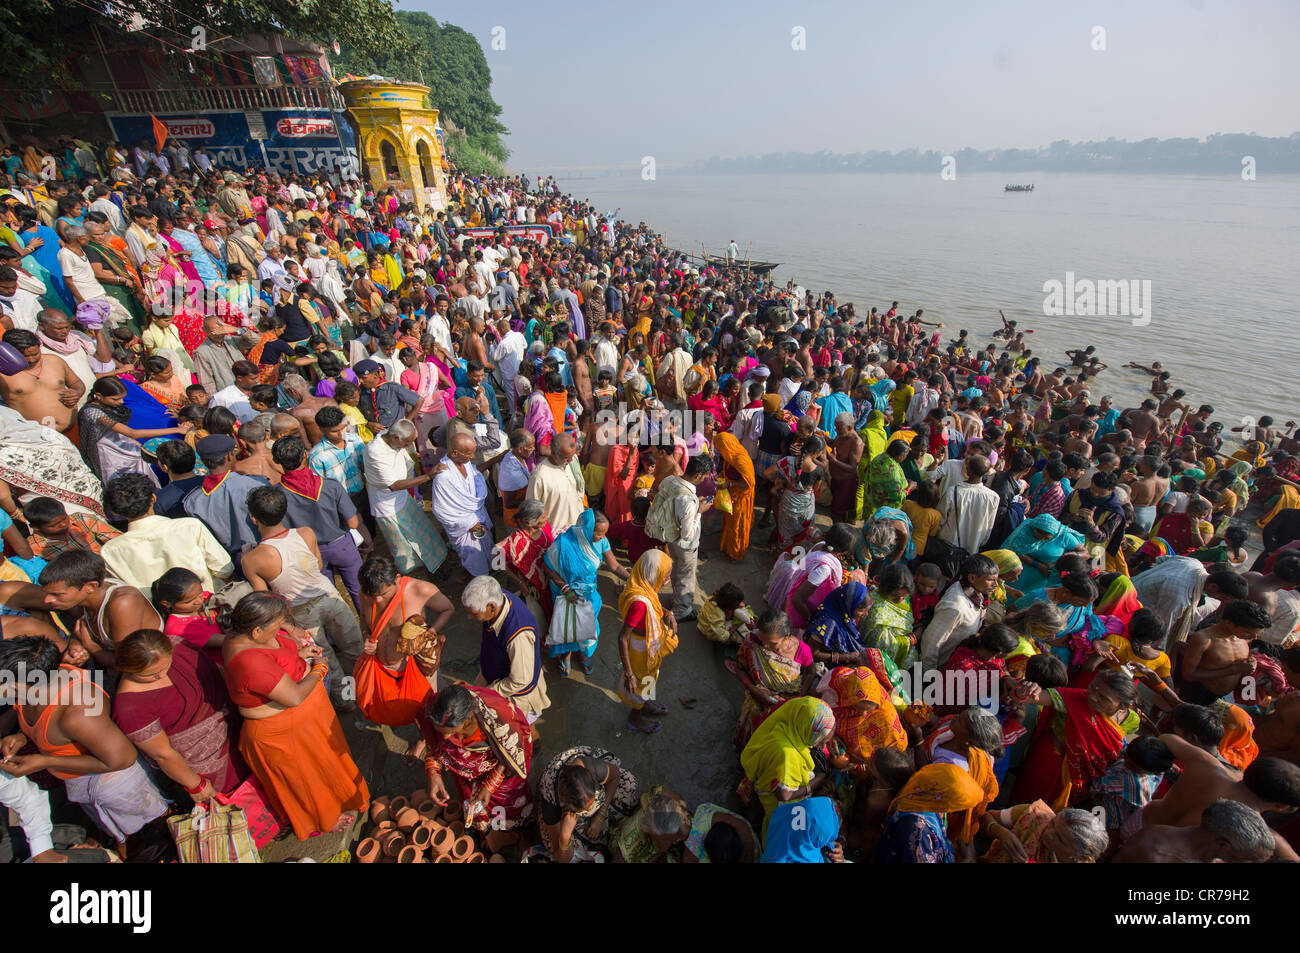 Echelle de pèlerins à la confluence des rivières Gange et Gandak, Sonepur Mela, Sonepur, Bihar, Inde Banque D'Images